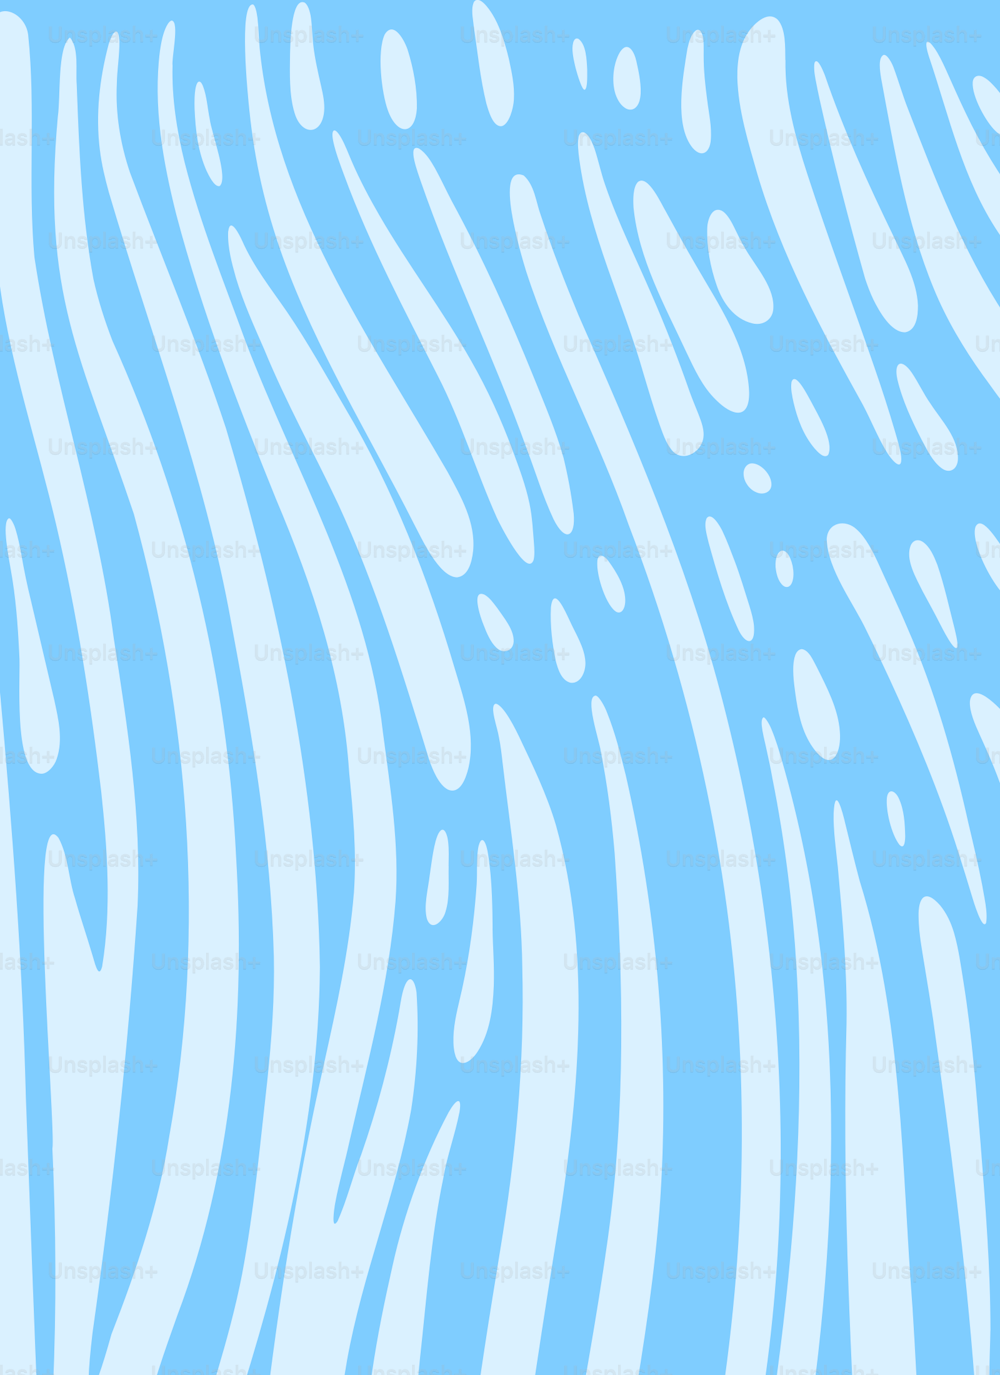 un fond bleu et blanc avec des lignes ondulées